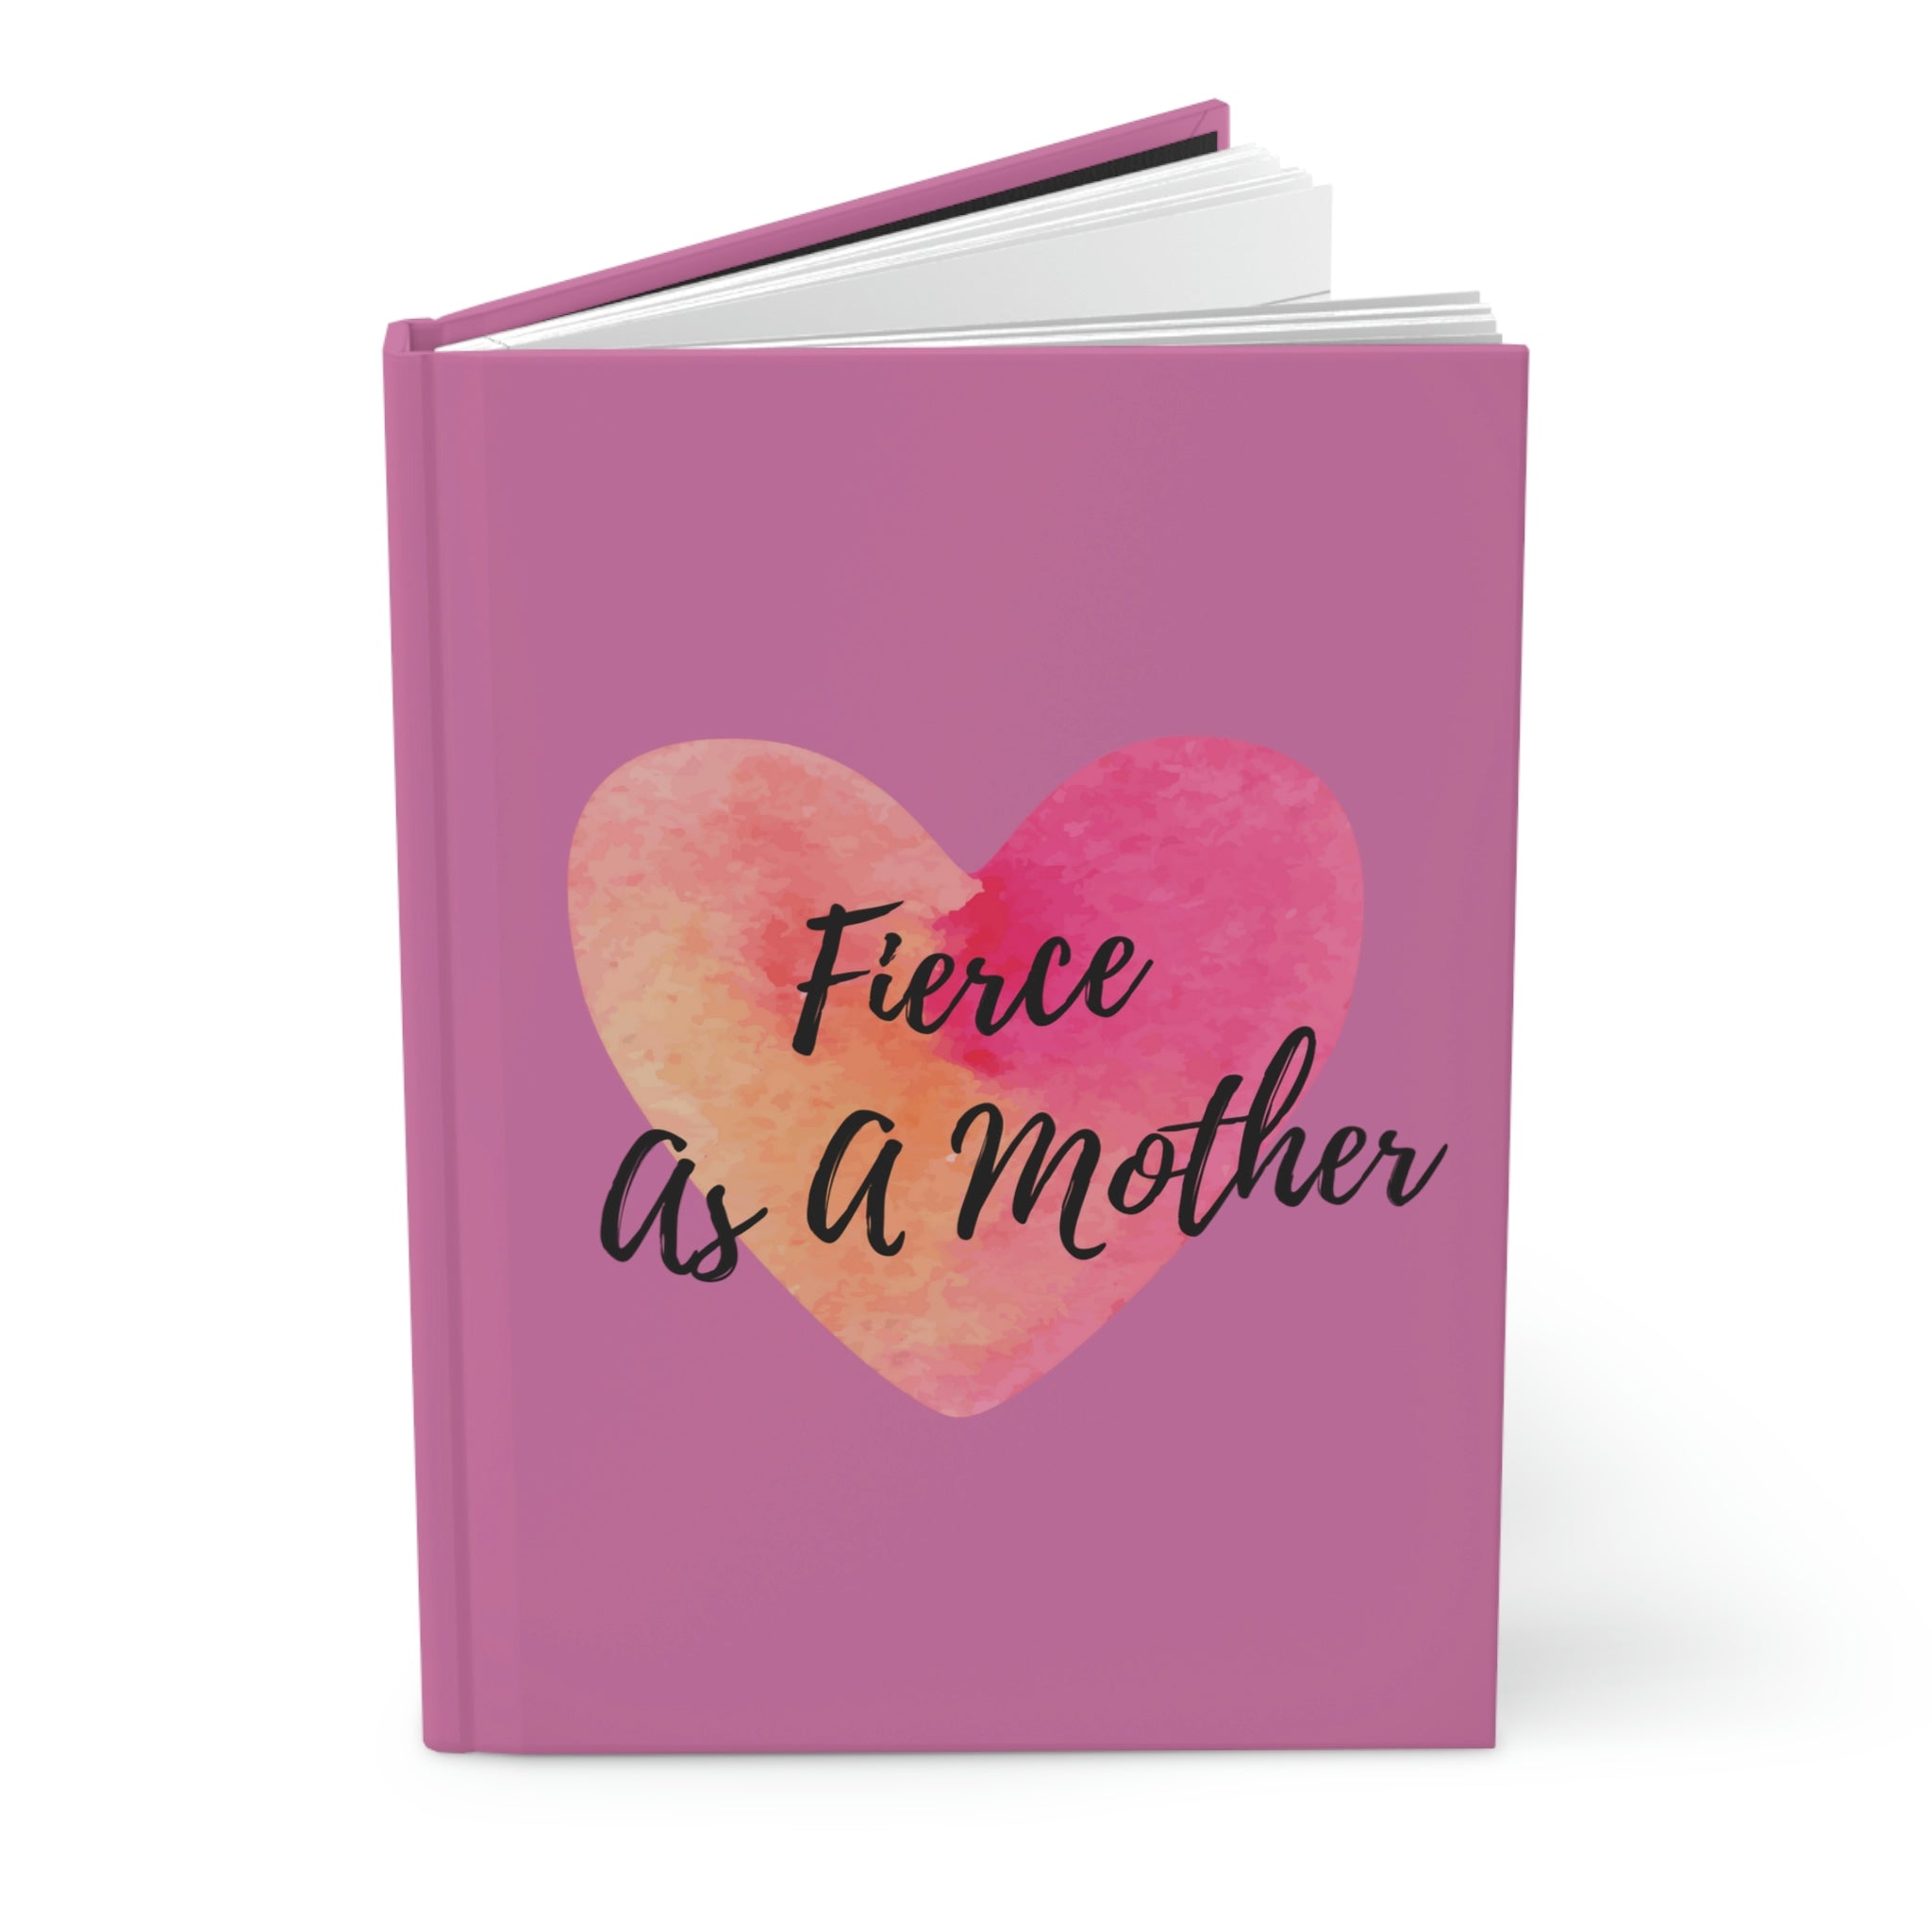 "Fierce As A Mother" Heart Hardcover Journal Matte